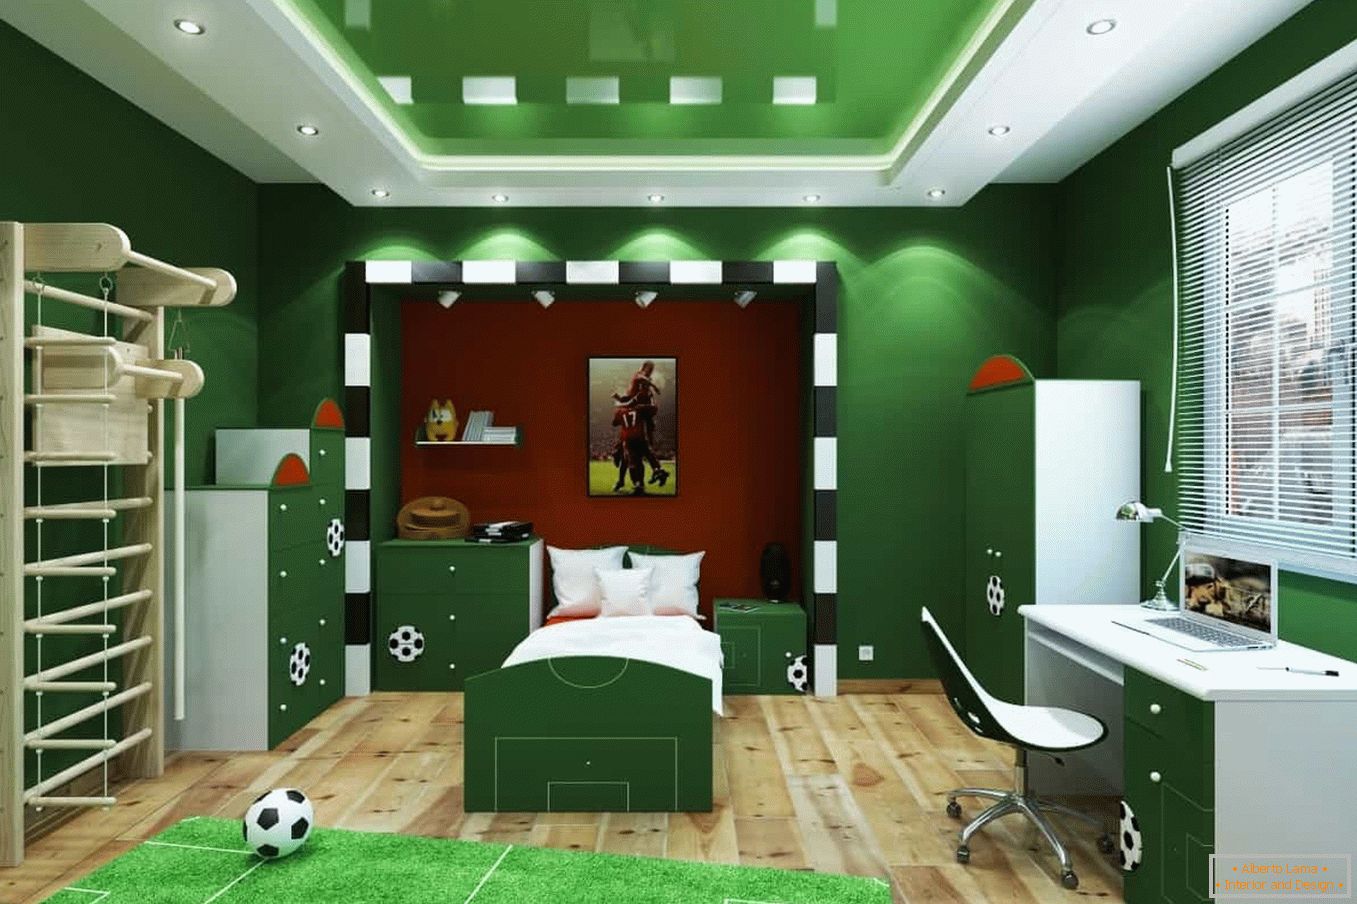 Zelená místnost - fotbalové hřiště